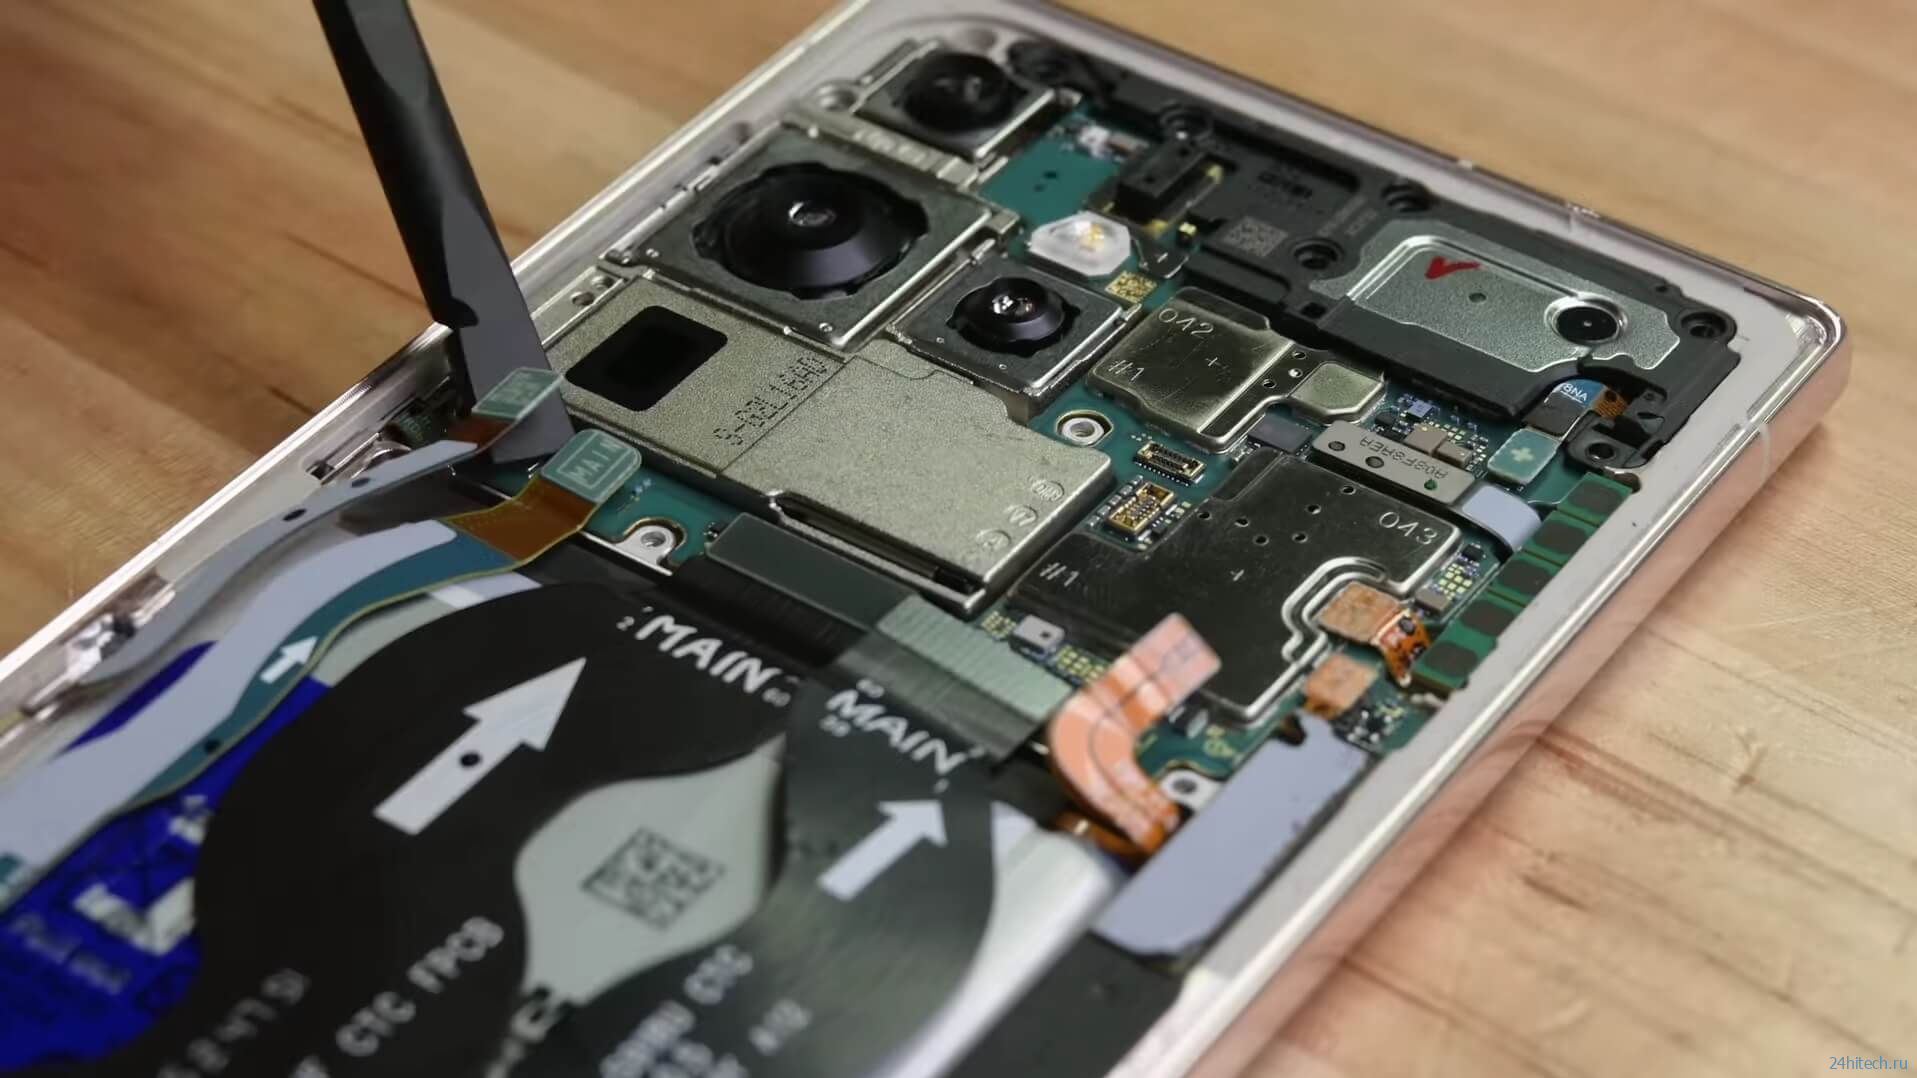 Нужна ли Samsung Galaxy S23 Ultra камера на 200 Мп? Теперь вы будете знать точный ответ